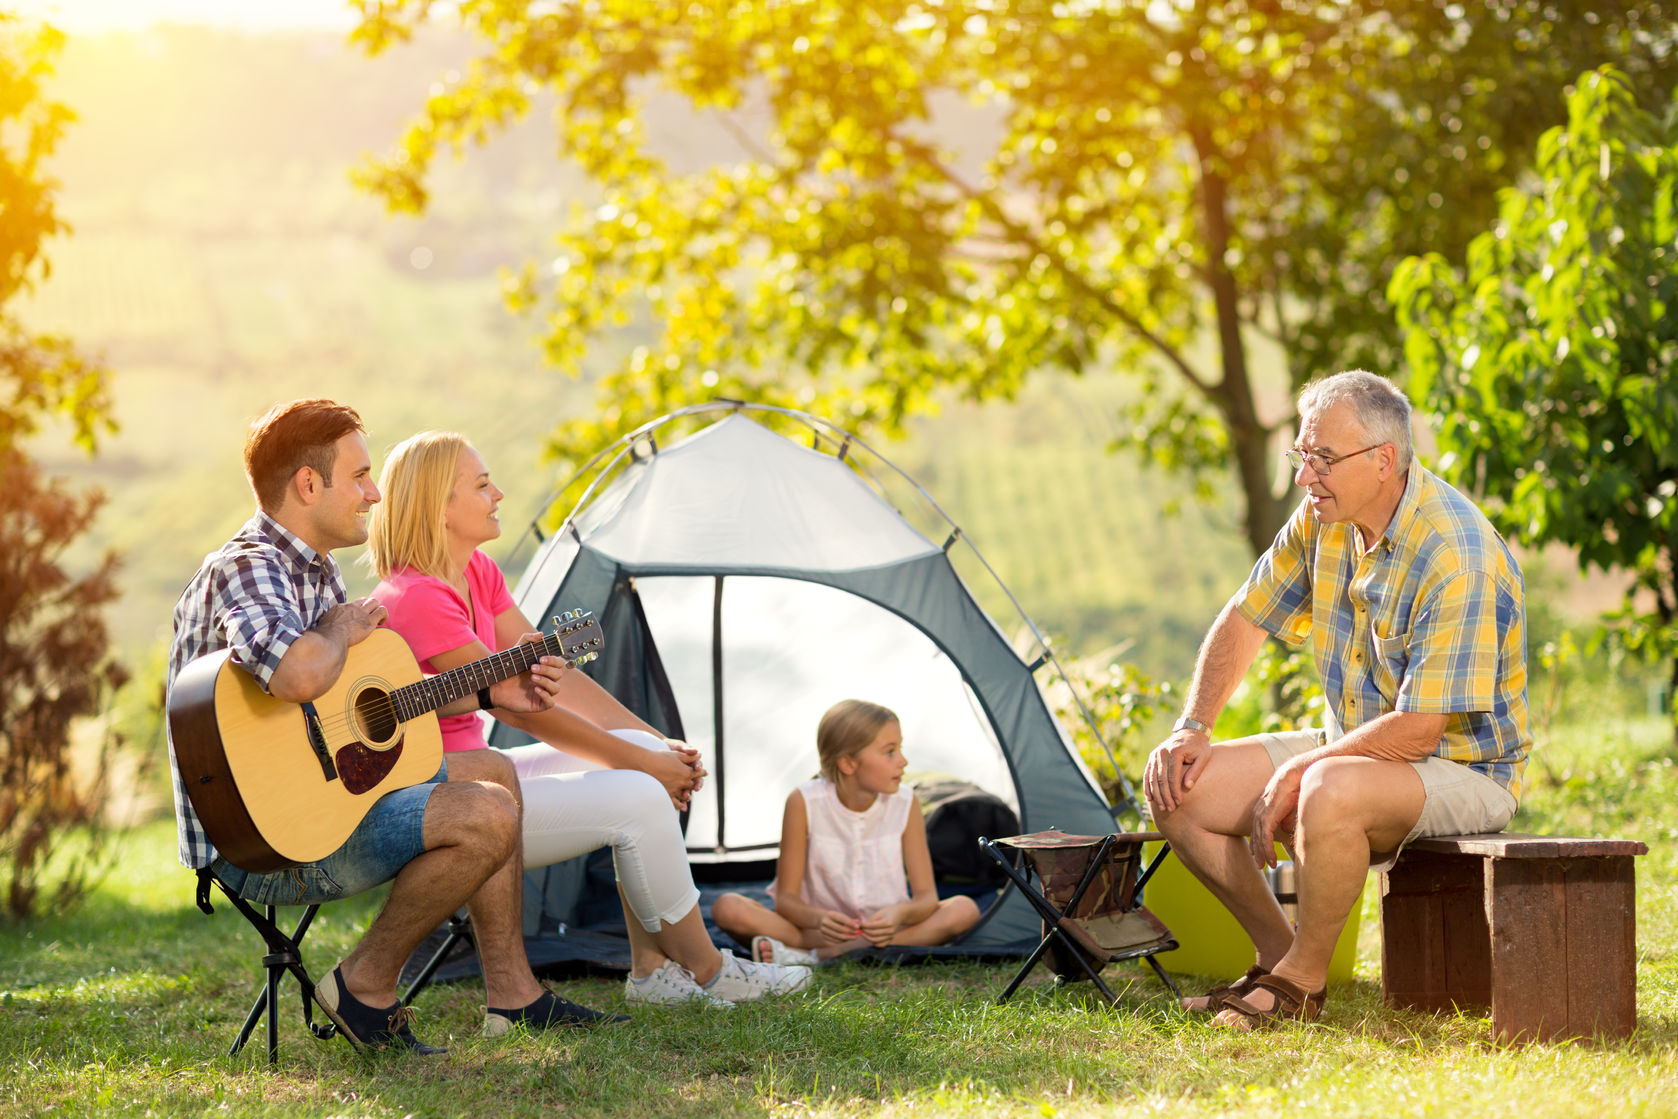 Camping together. Семья на природе с палаткой. Кемпинг с семьей. Семья в палатке. Дети в палатке на природе.